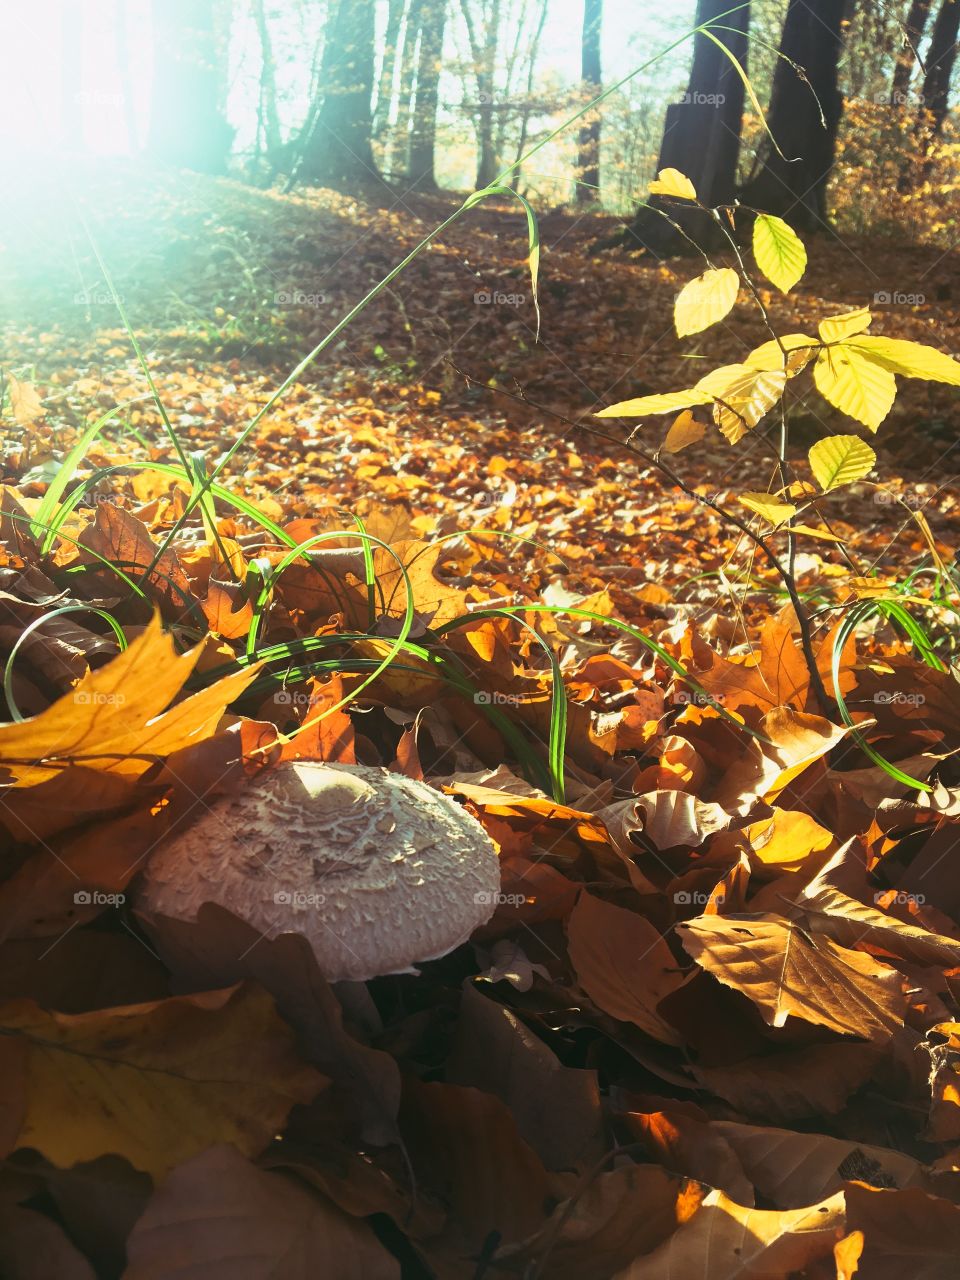 Mushroom in golden leaves forest floor 